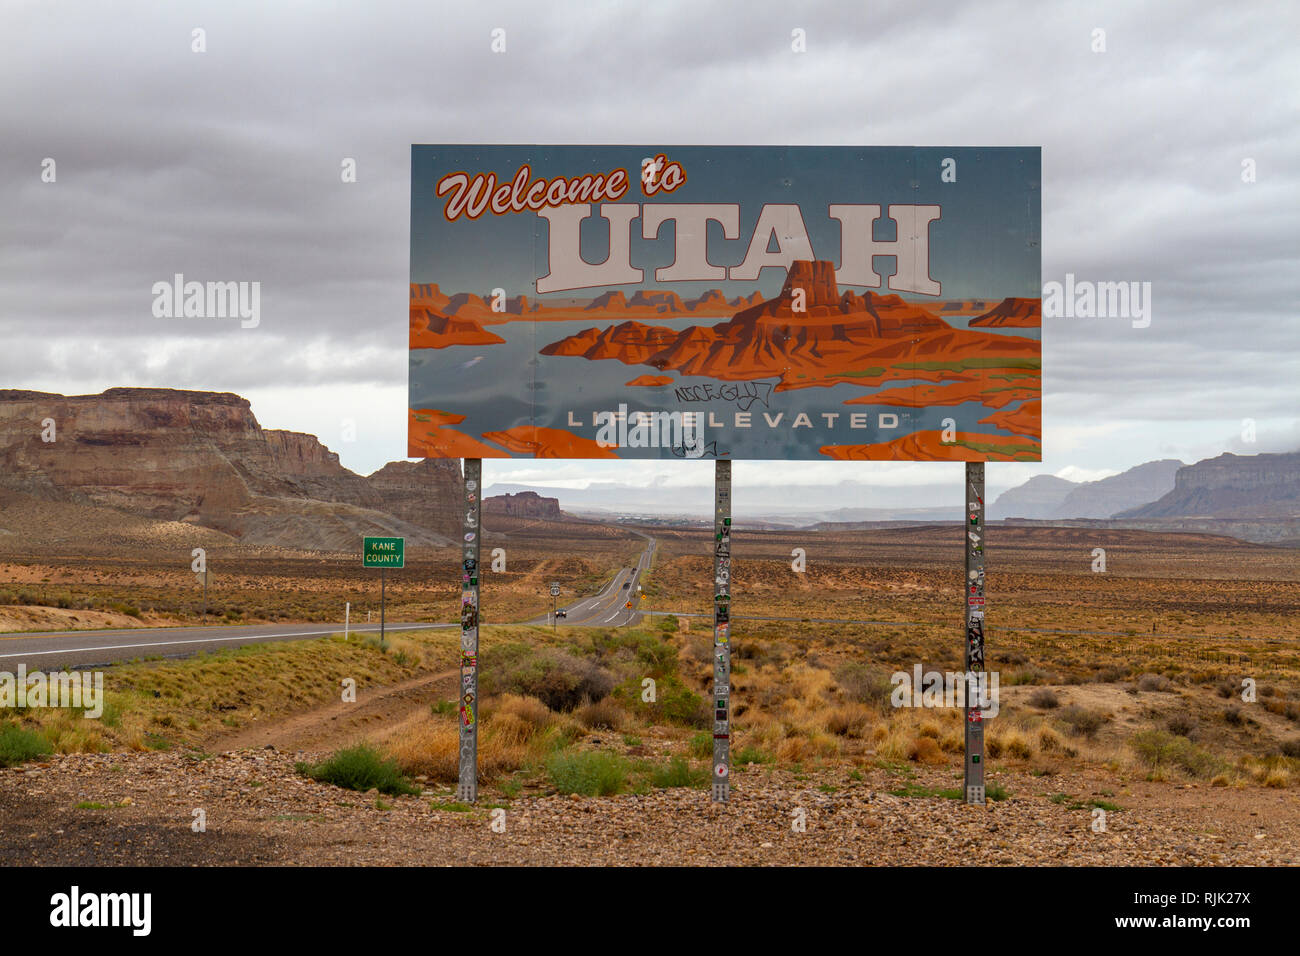 "Bienvenido a Utah' lado carretera firmar asesorar a los controladores que están entrando en el estado de Utah, Estados Unidos. Foto de stock